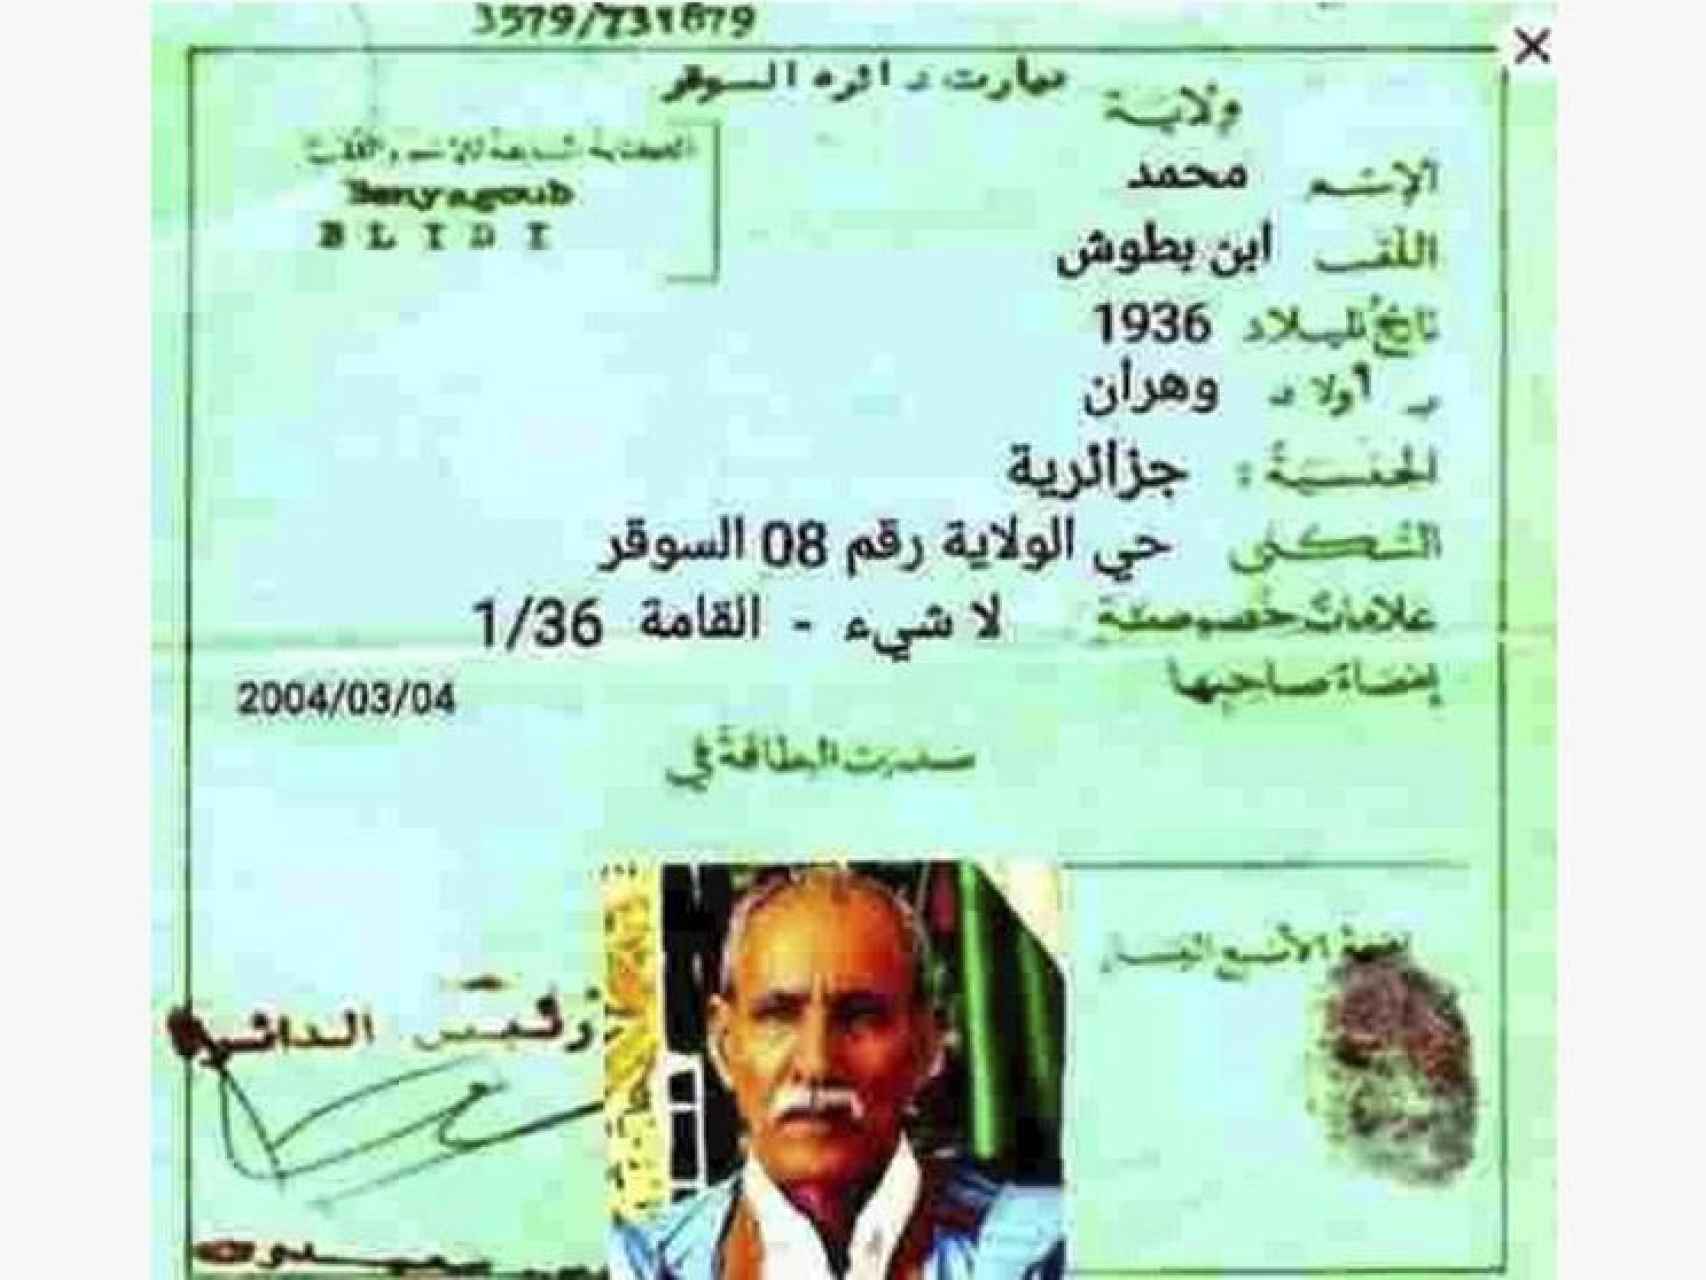 El presunto documento falso utilizado por Ghali para entrar a España, según The Algeria Times